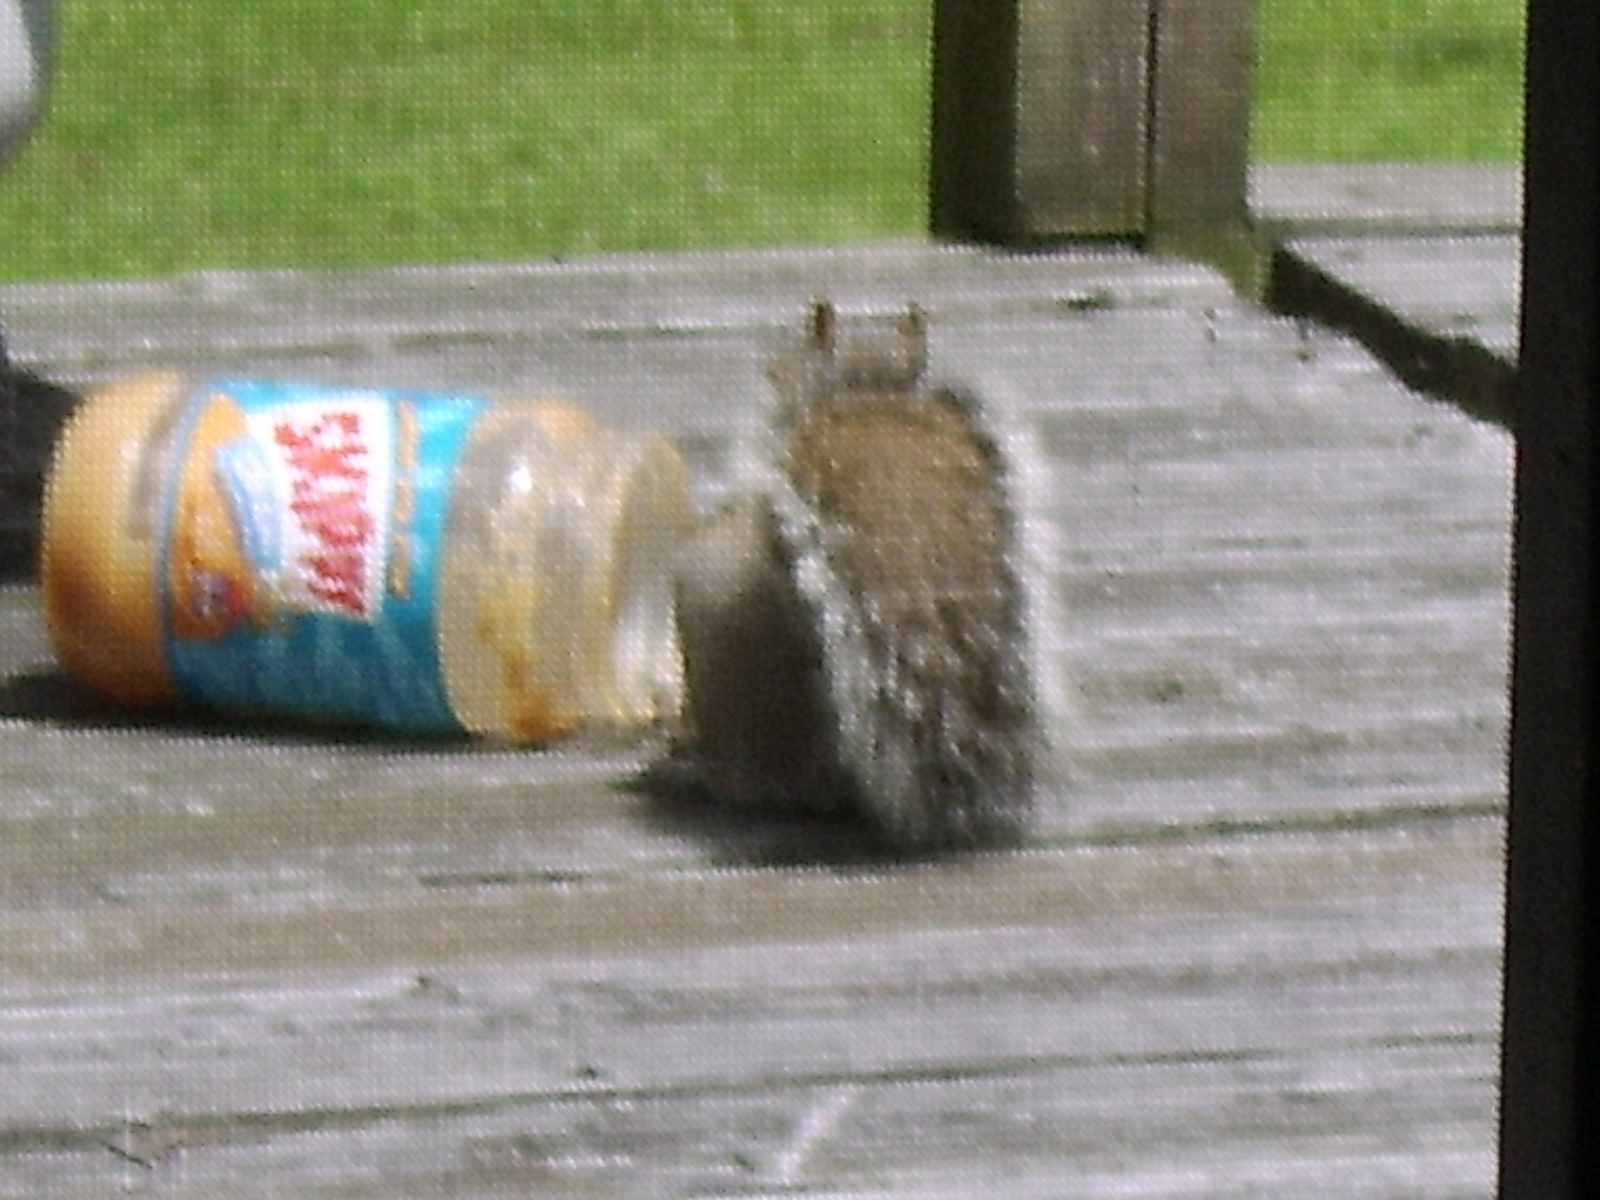 [squirrel+crawling+into+Peanut+butter+jar.jpg]